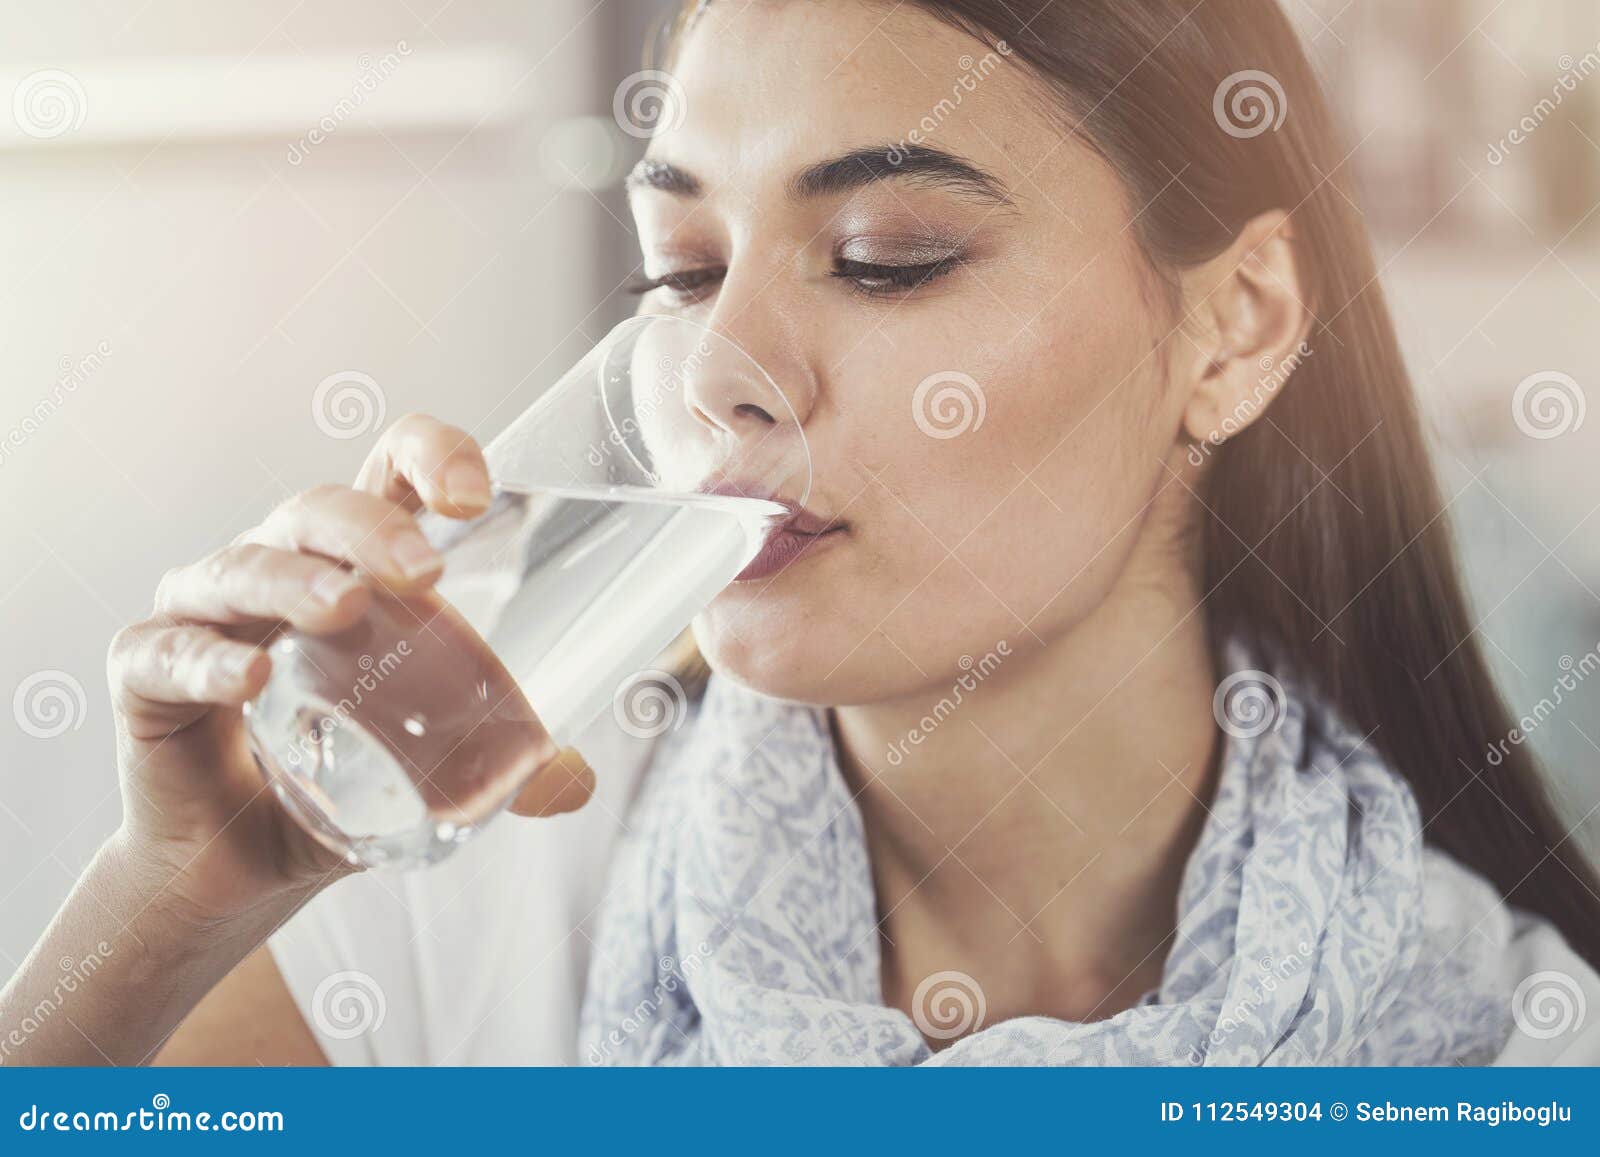 Вкус и запах питьевой воды. Женщина пьет. Девушка пьет воду из стакана. Девушка пьет чистую воду. Женщина пьет чистую воду фото.